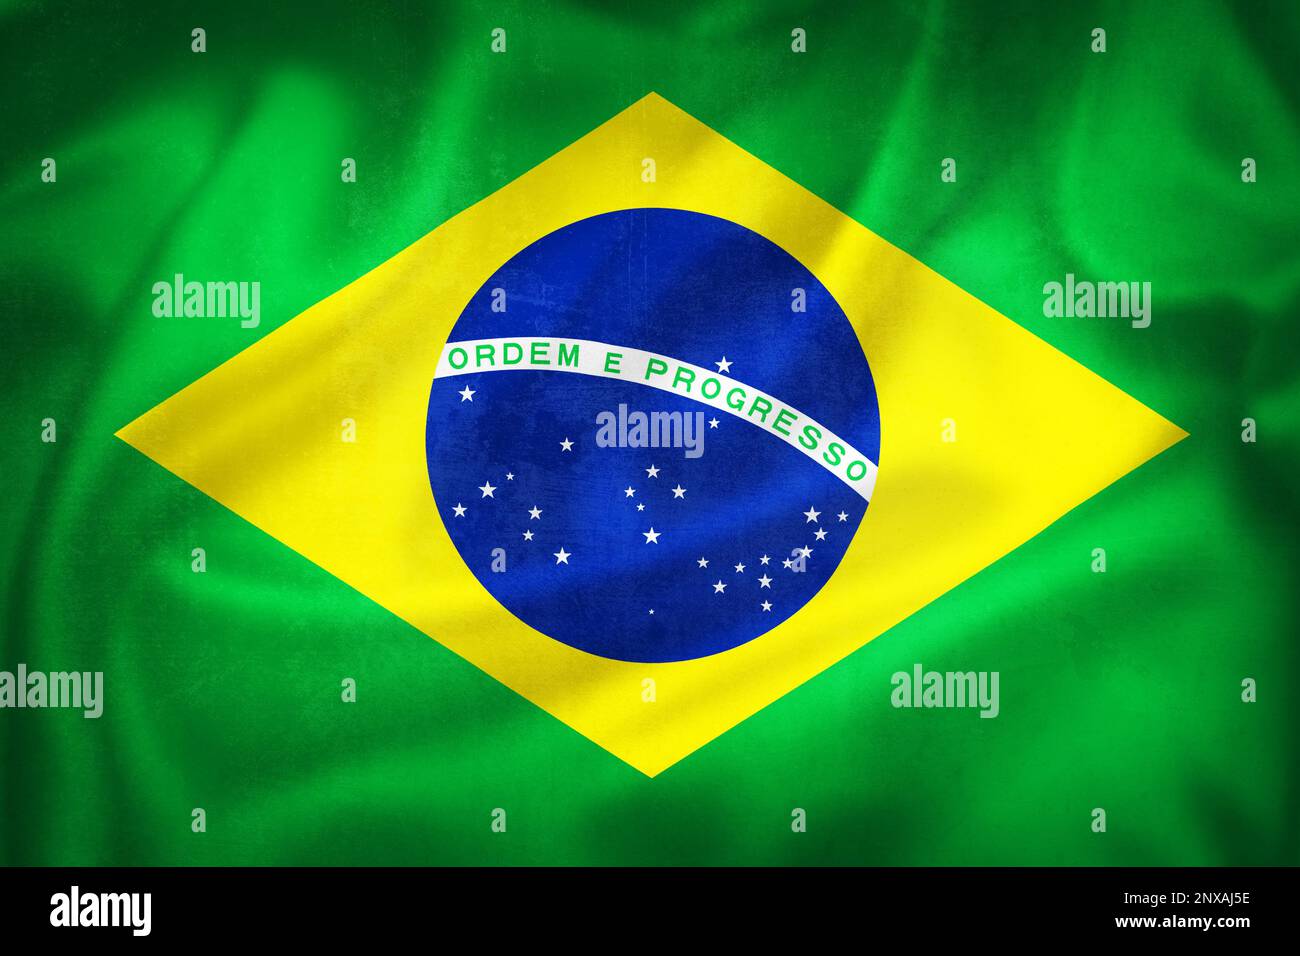 Grunge 3D illustration of Brazil flag, concept of Brazil Stock Photo